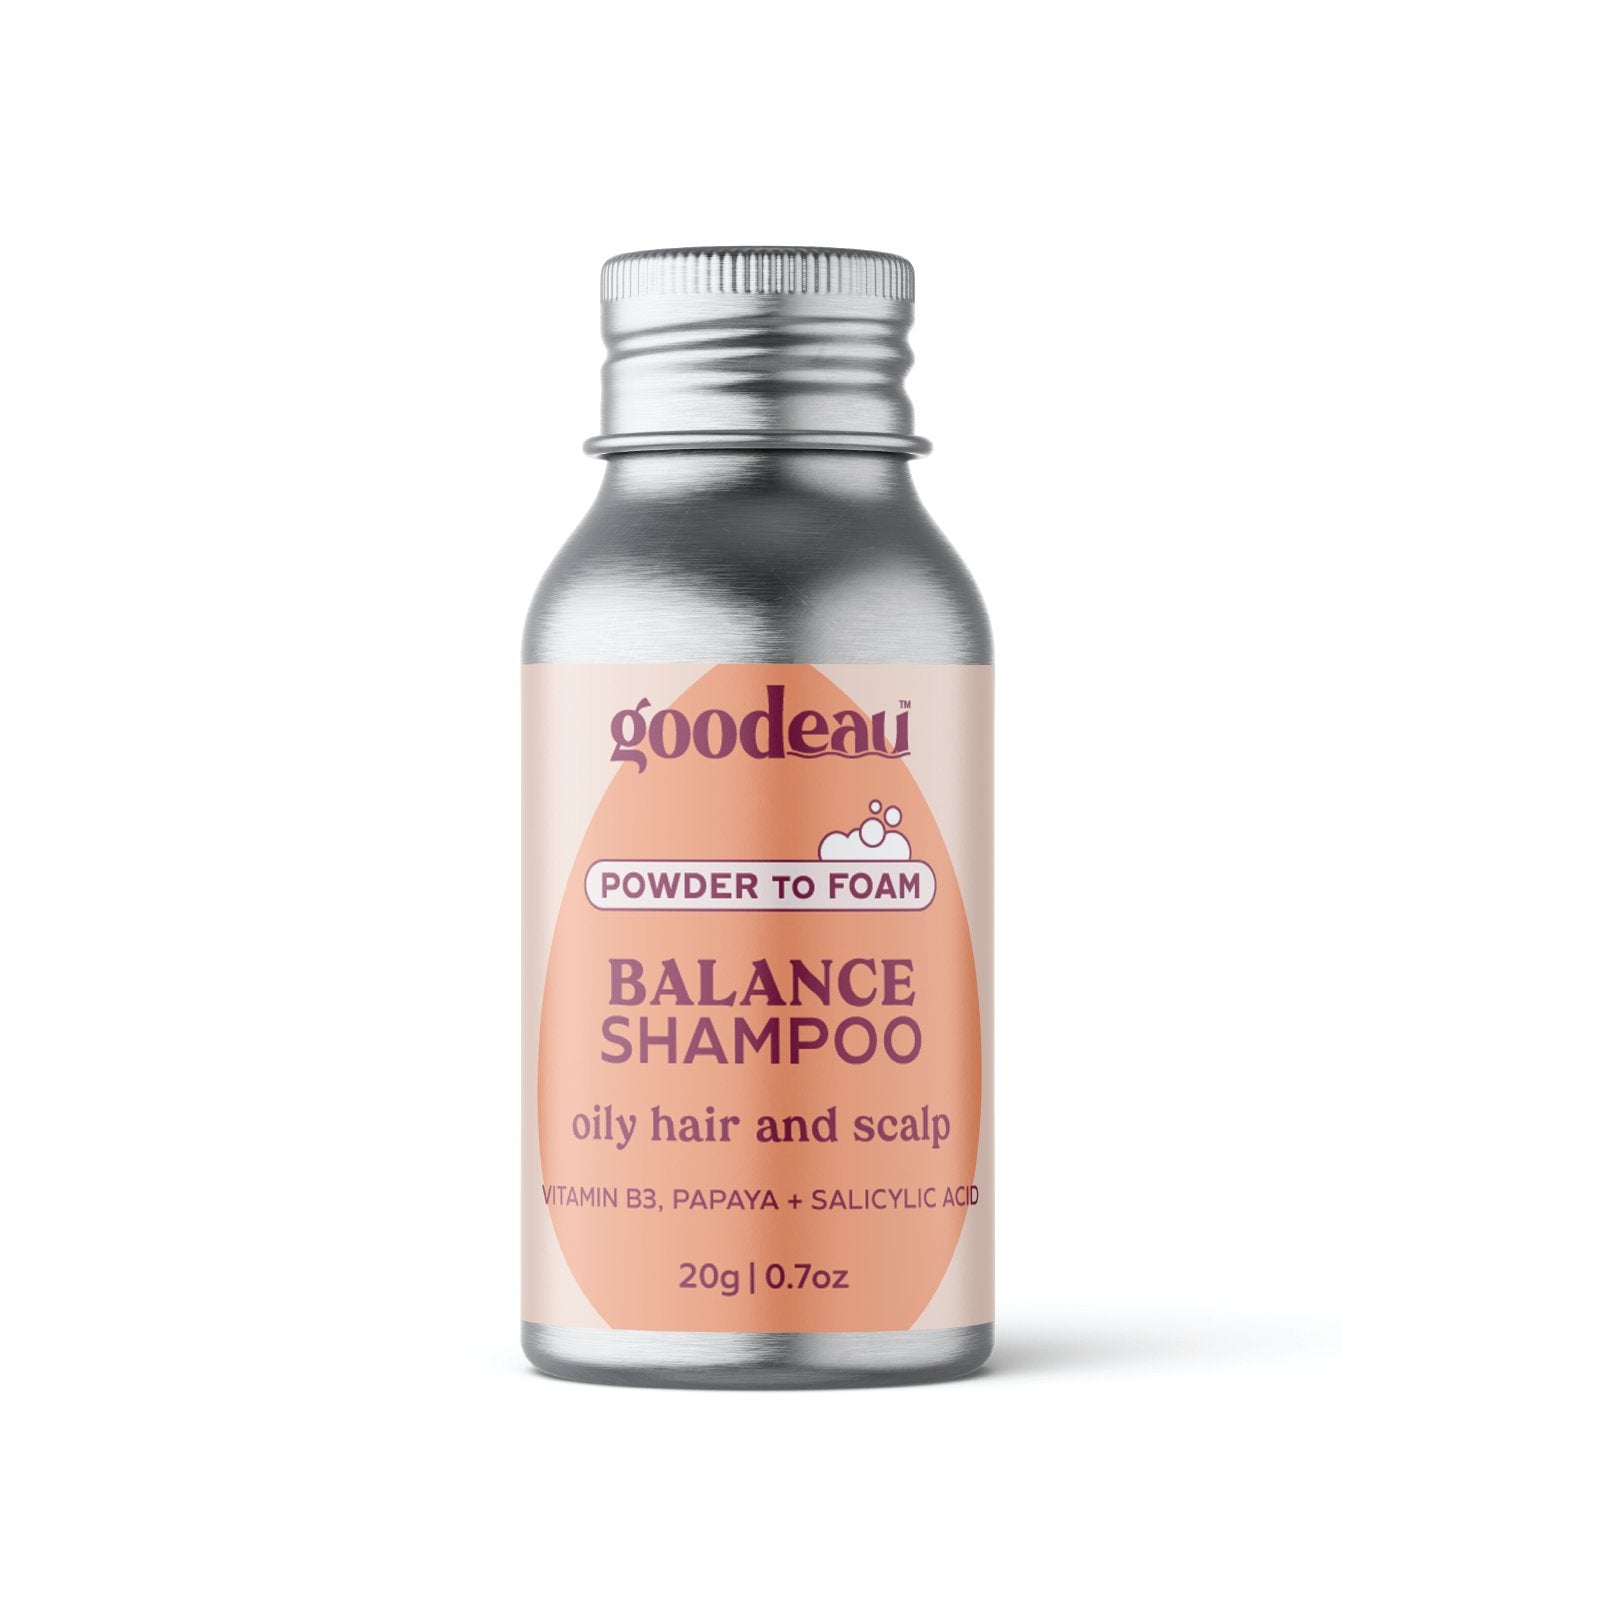 Balance Shampoo - Goodeau